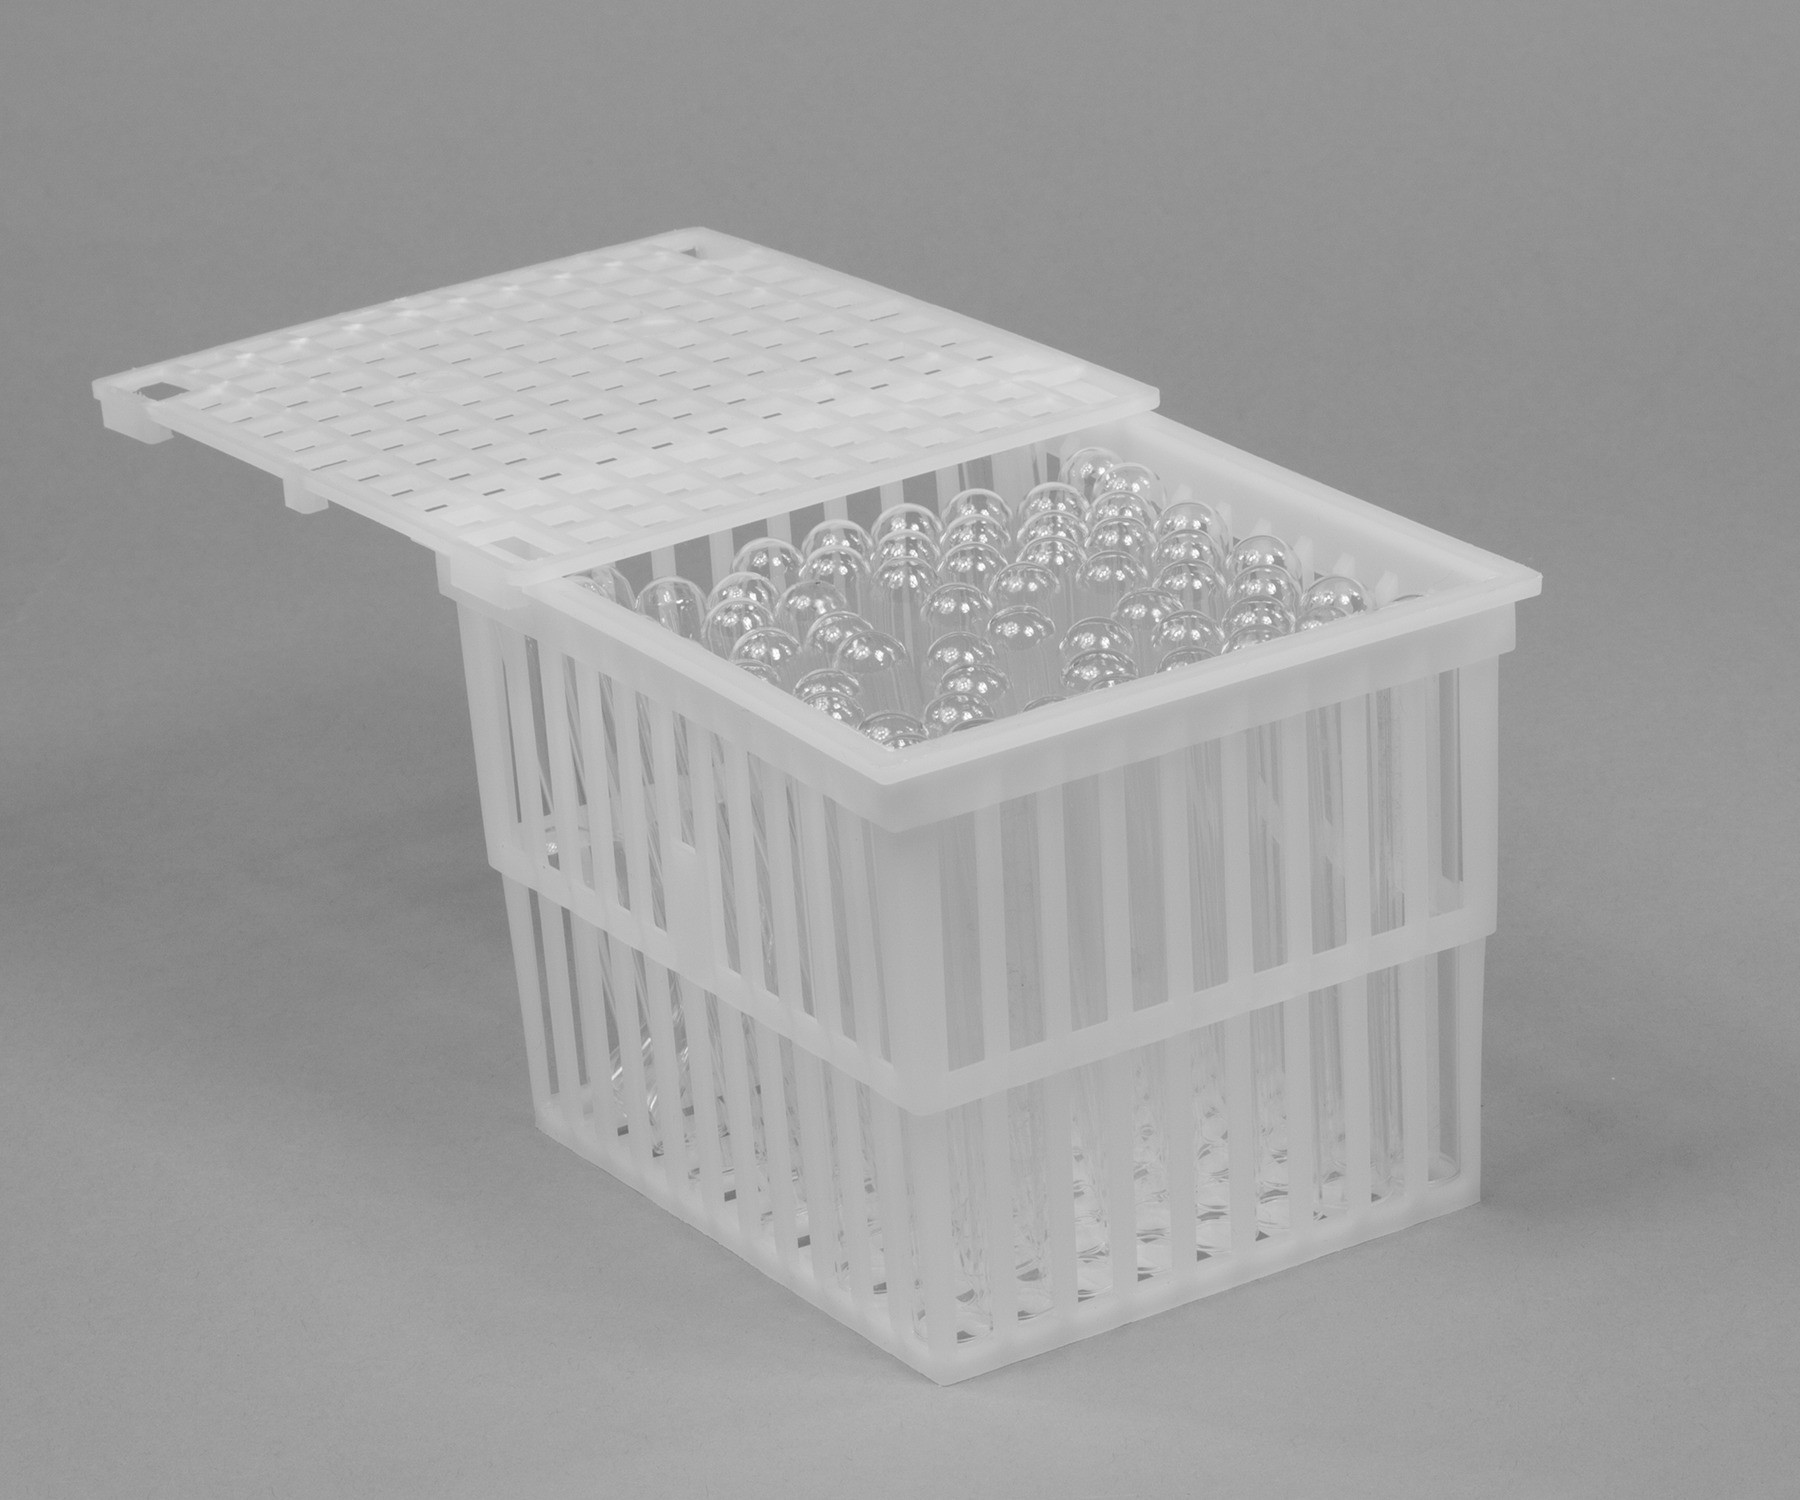 SP Bel-Art Polypropylene Test Tube Basket; 5 x 4 x 4 in., With Lid